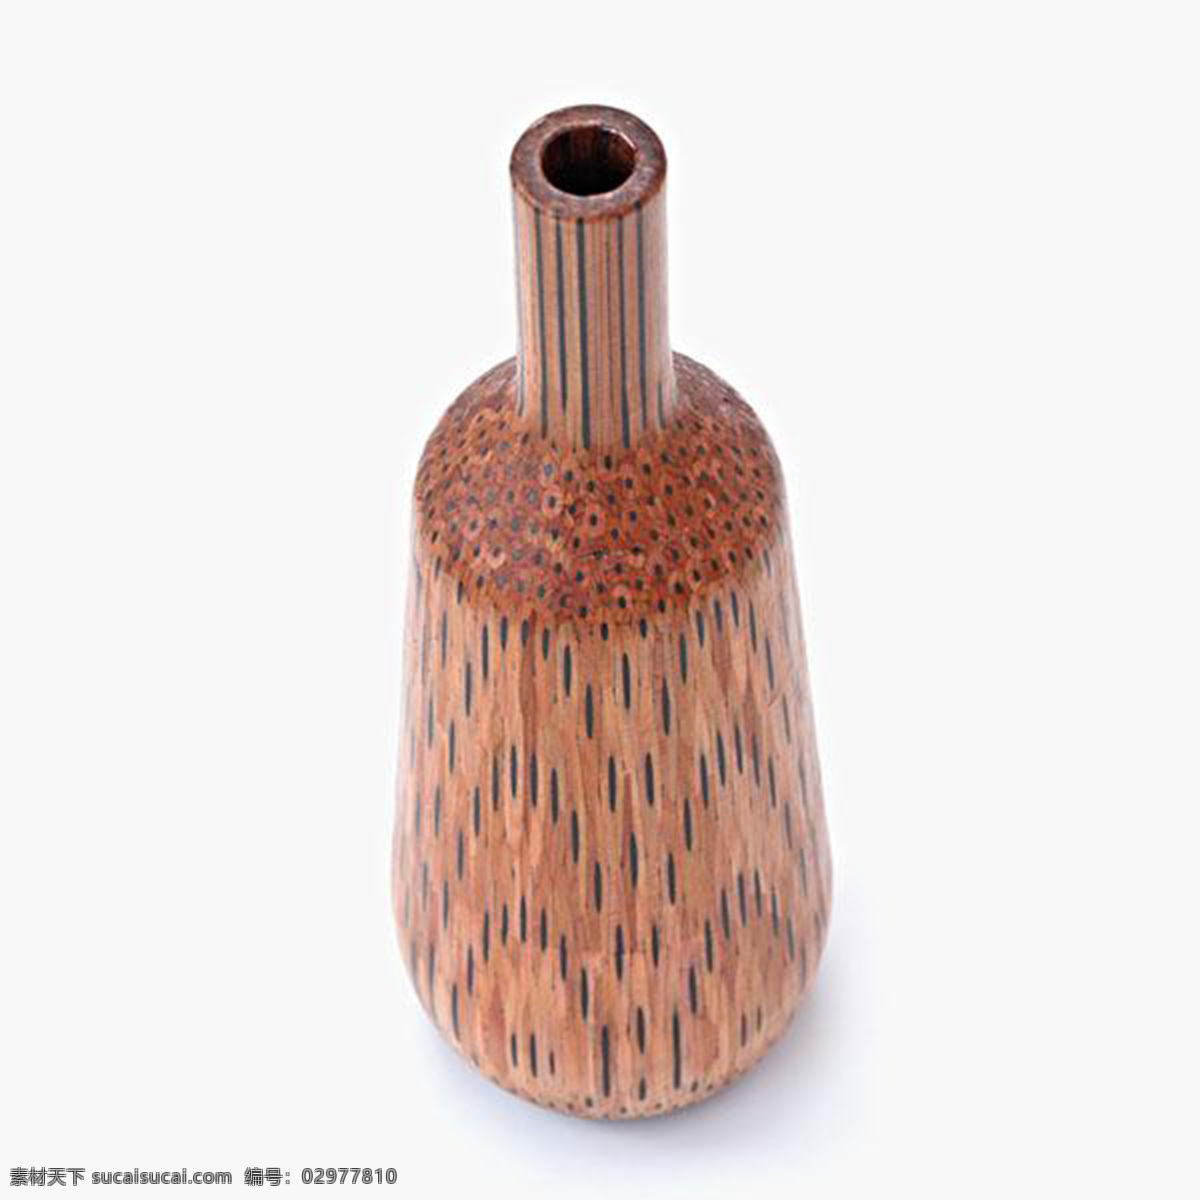 铅笔 花瓶 小 饰品 产品设计 创意 工业设计 灵感 清新 小饰品